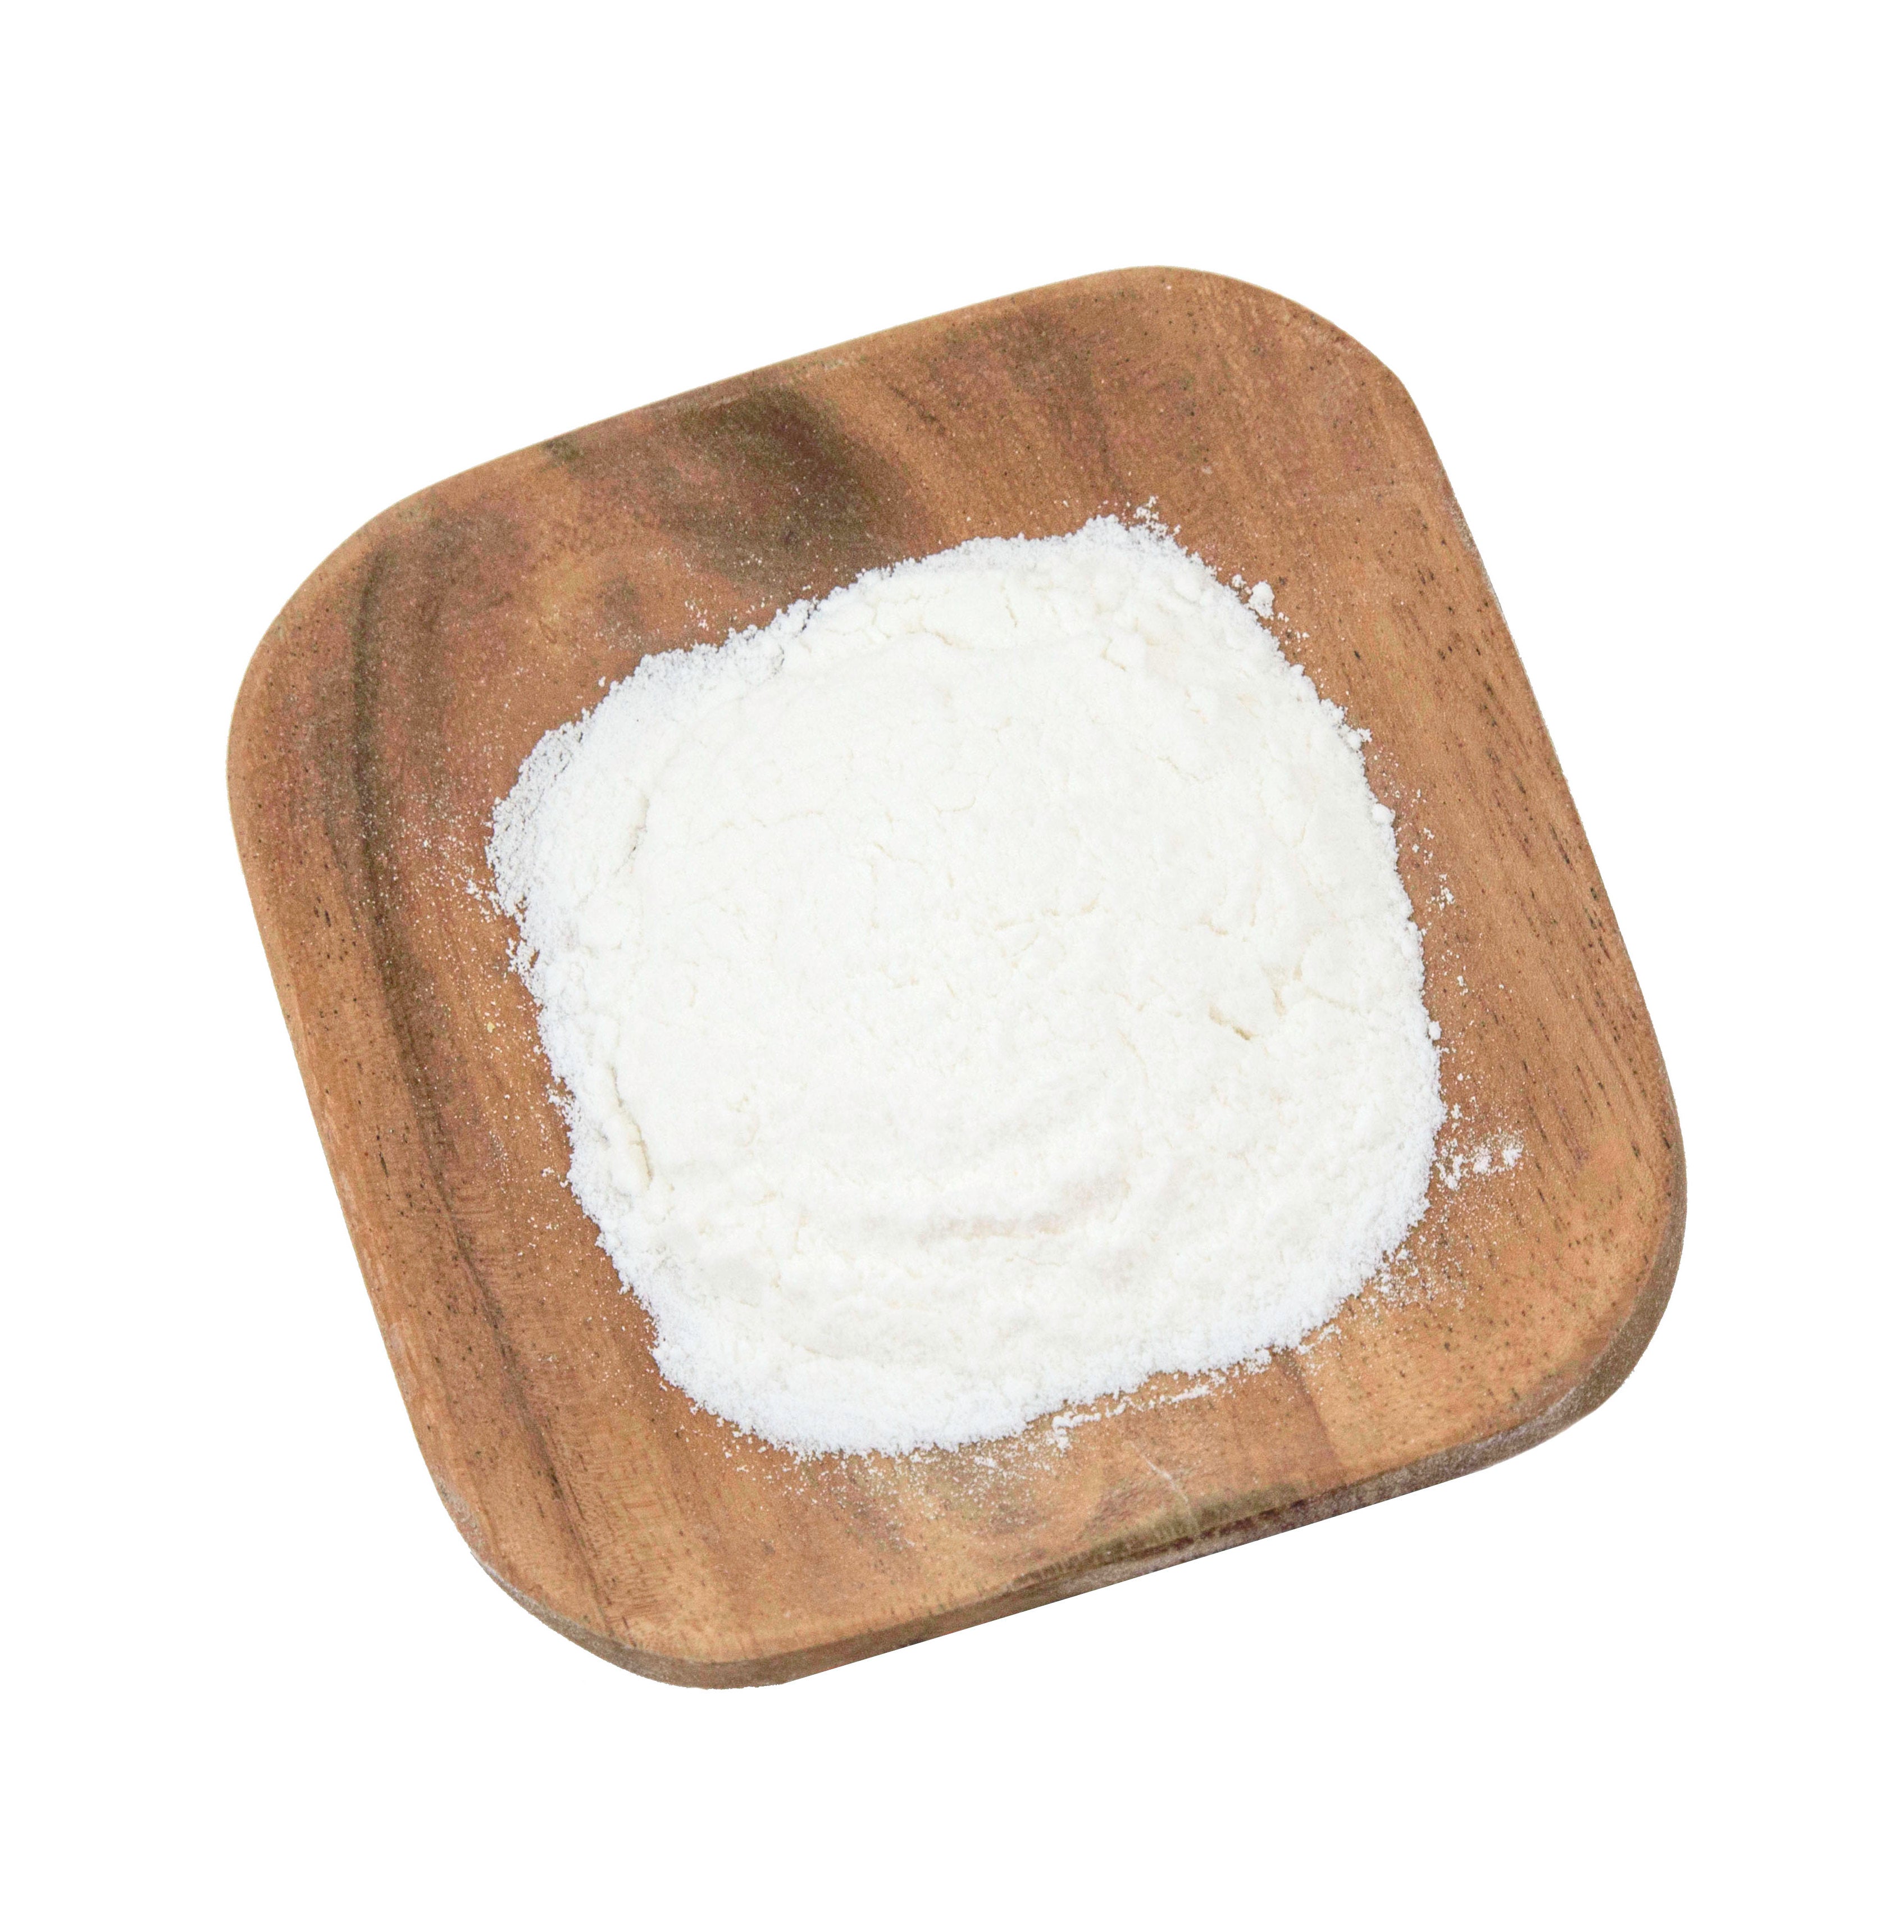 Lifestyle Markets Organic Unbleached White Flour (2 kg) - Lifestyle Markets